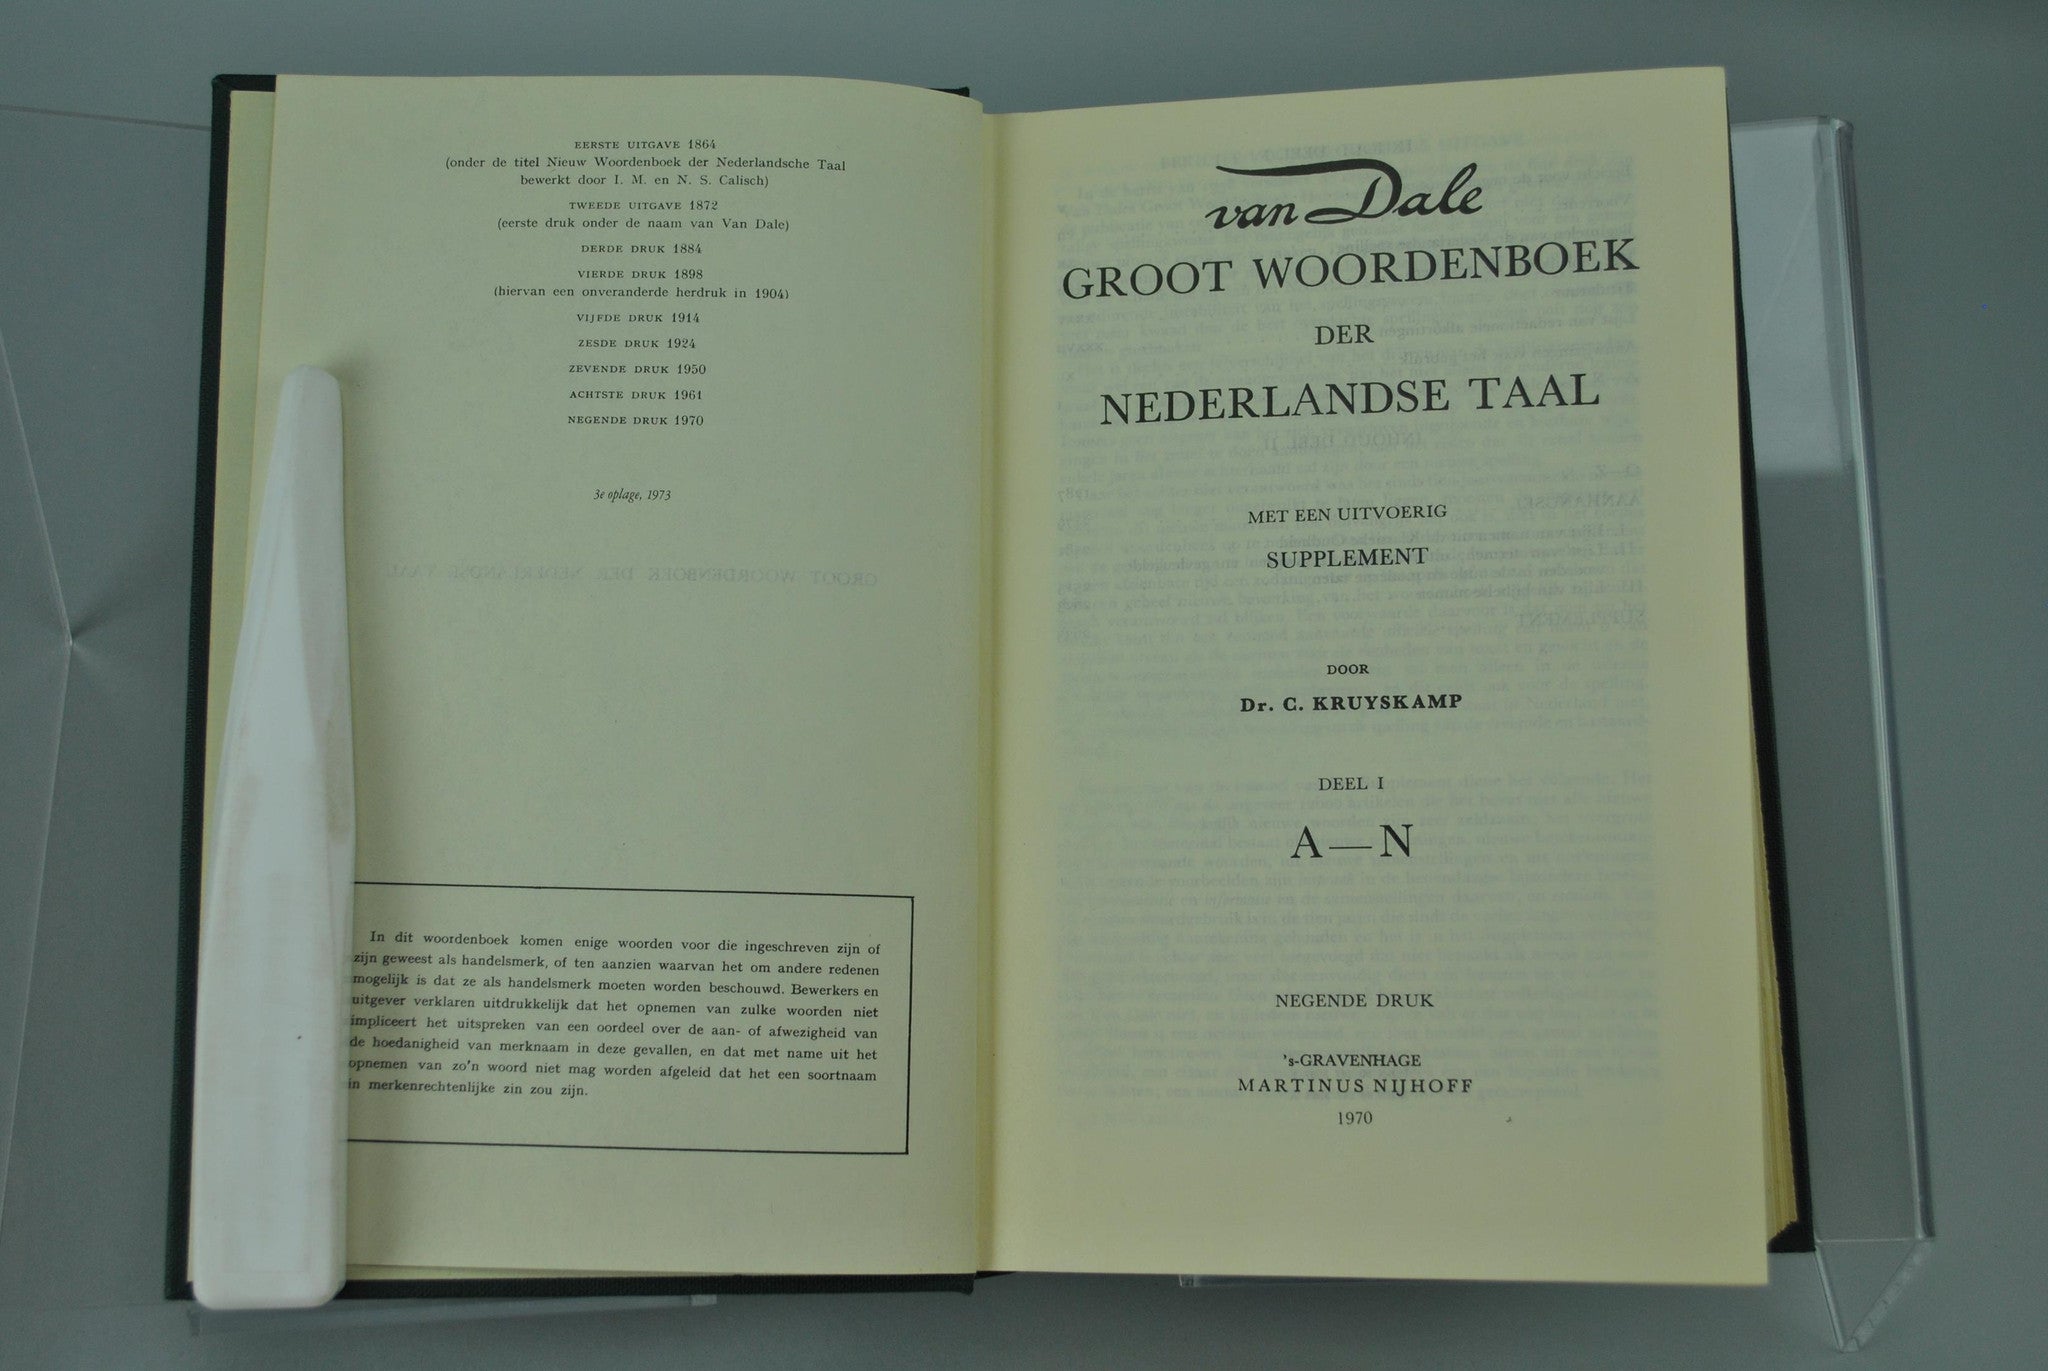 Groot Woordenboek der Nederlandse Taal by Van Dale 1970 - Historic 